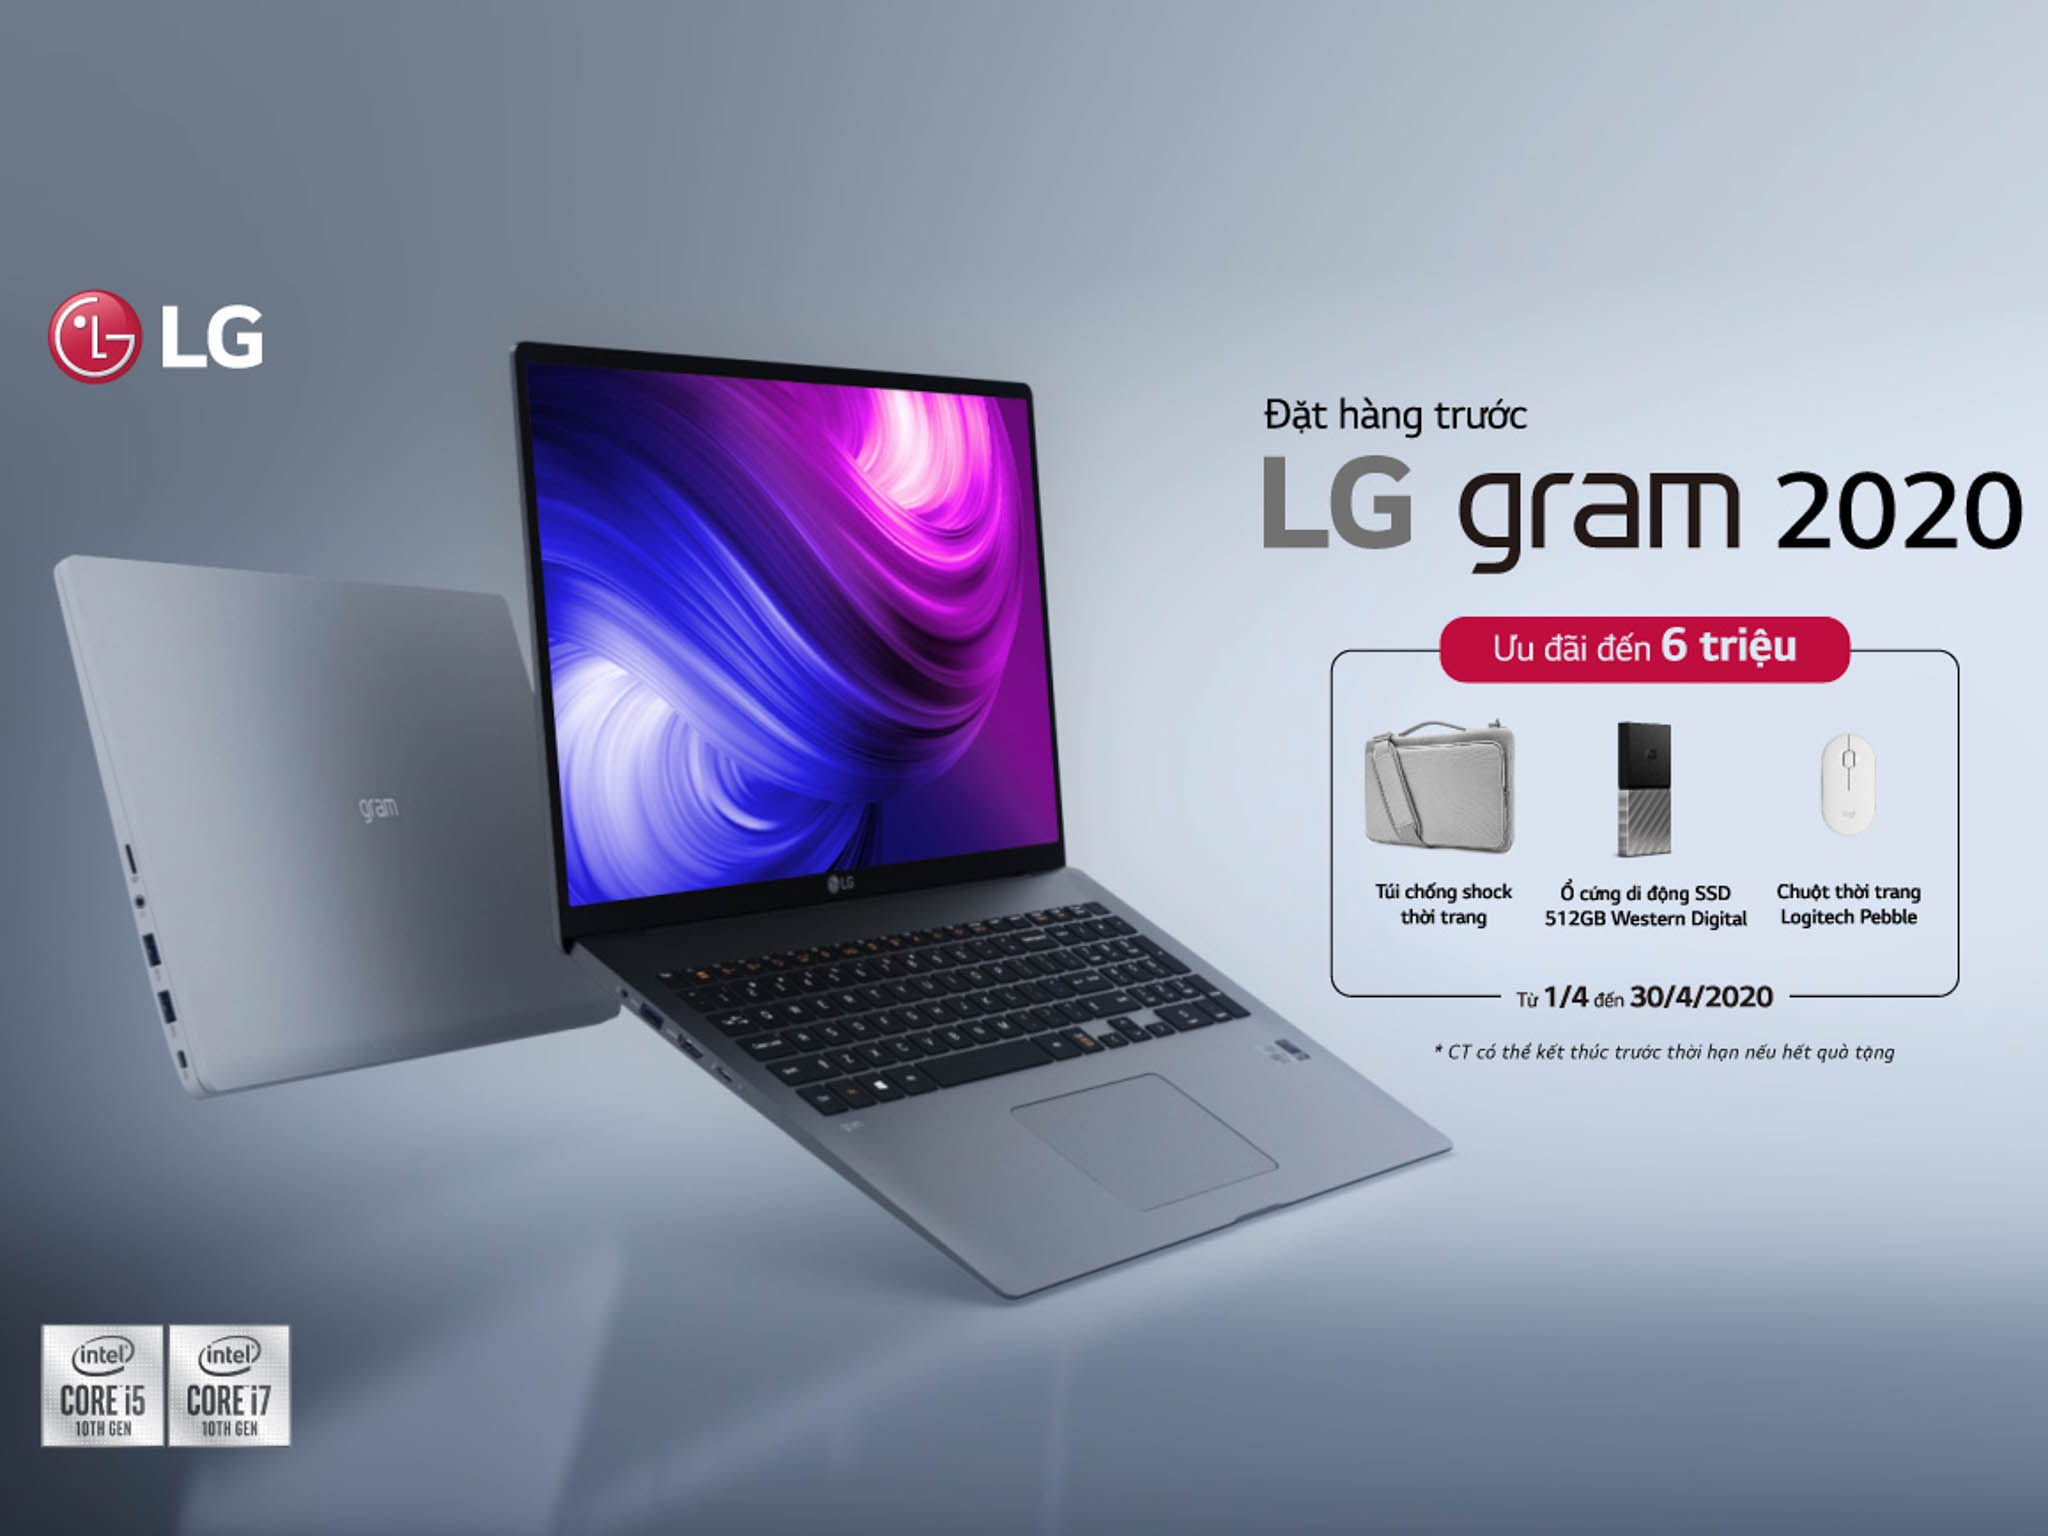 LG ra mắt laptop LG gram 2020: Bộ xử lý Intel Core thế hệ thứ 10, pin lâu, thiết kế siêu mỏng nhẹ